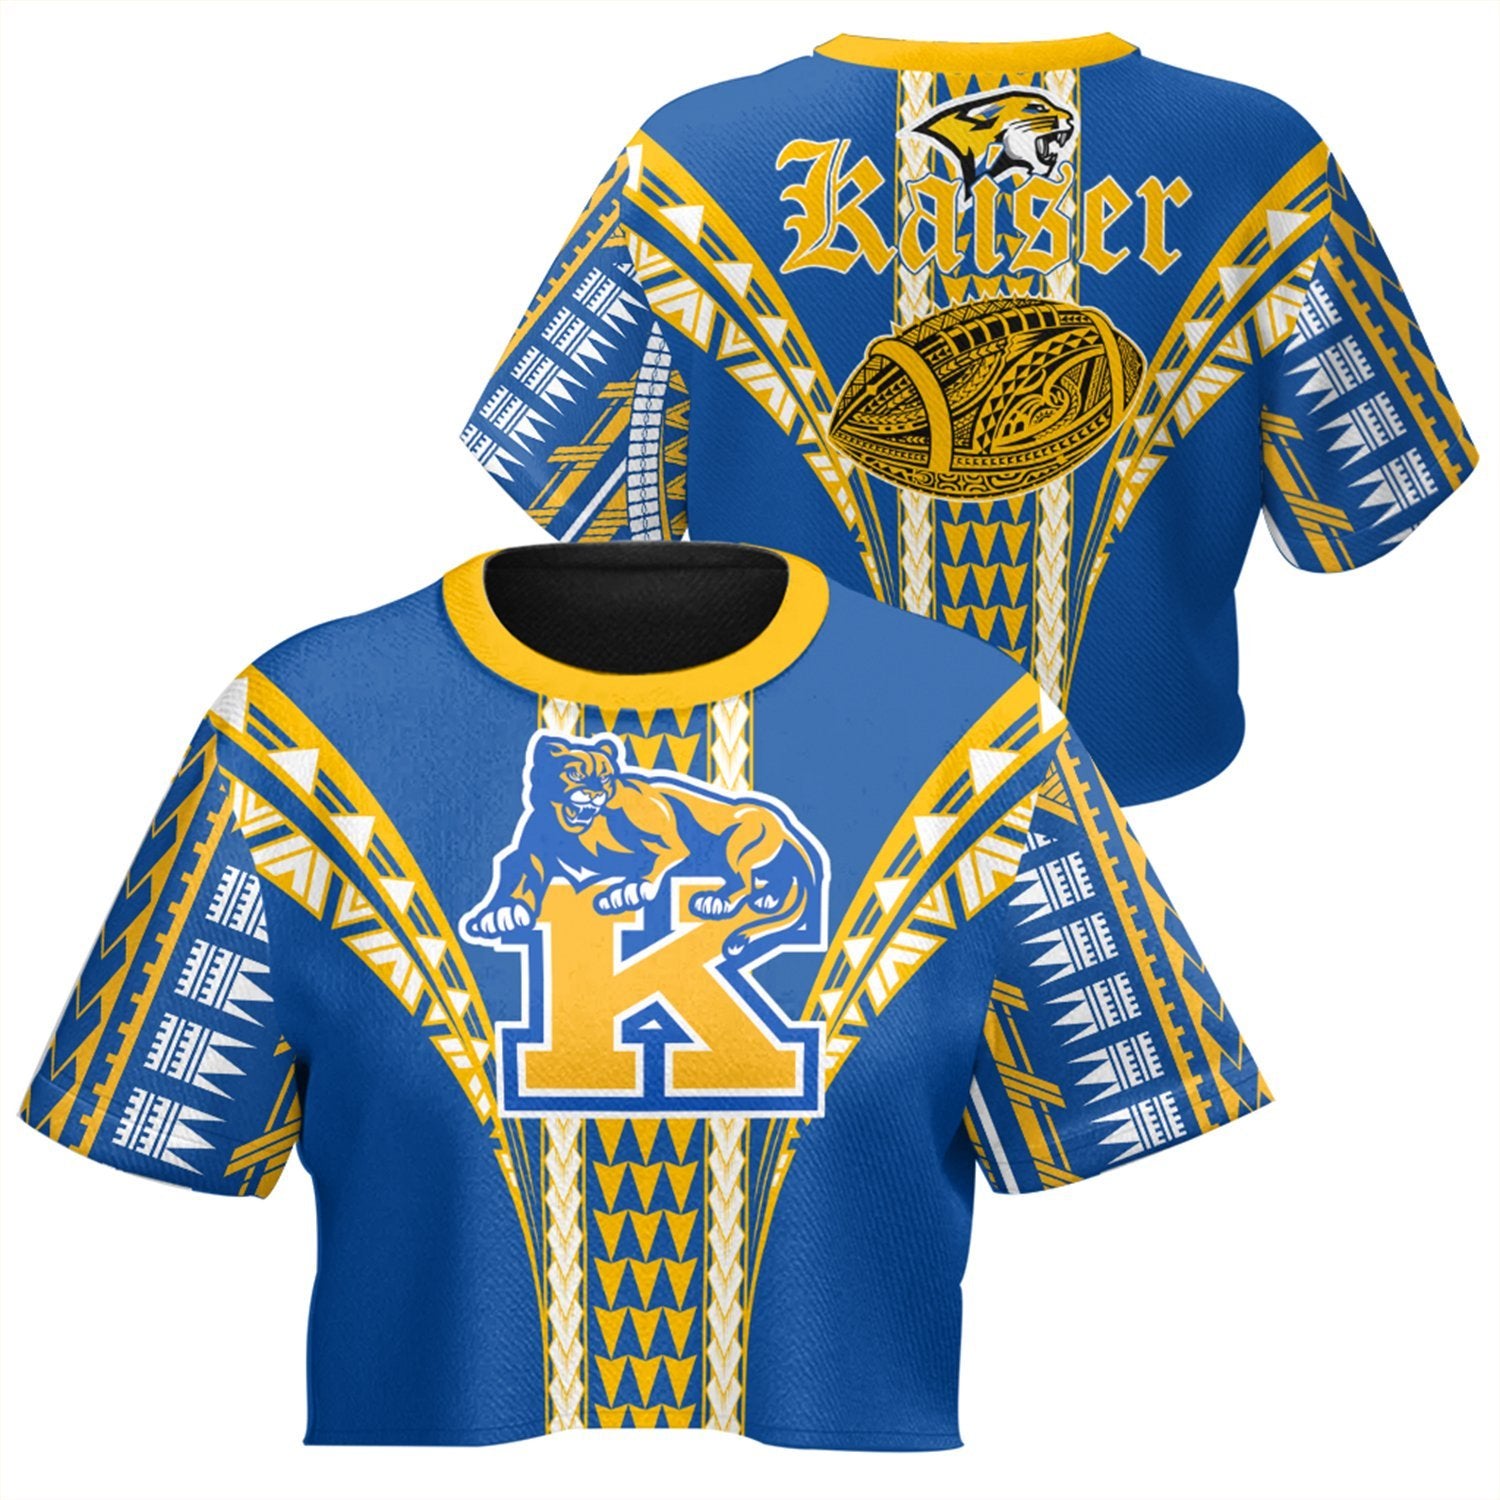 Hawaii - Kaiser High Football Jersey Crop Top T - Shirt - AH Crop T-shirt Blue - Polynesian Pride